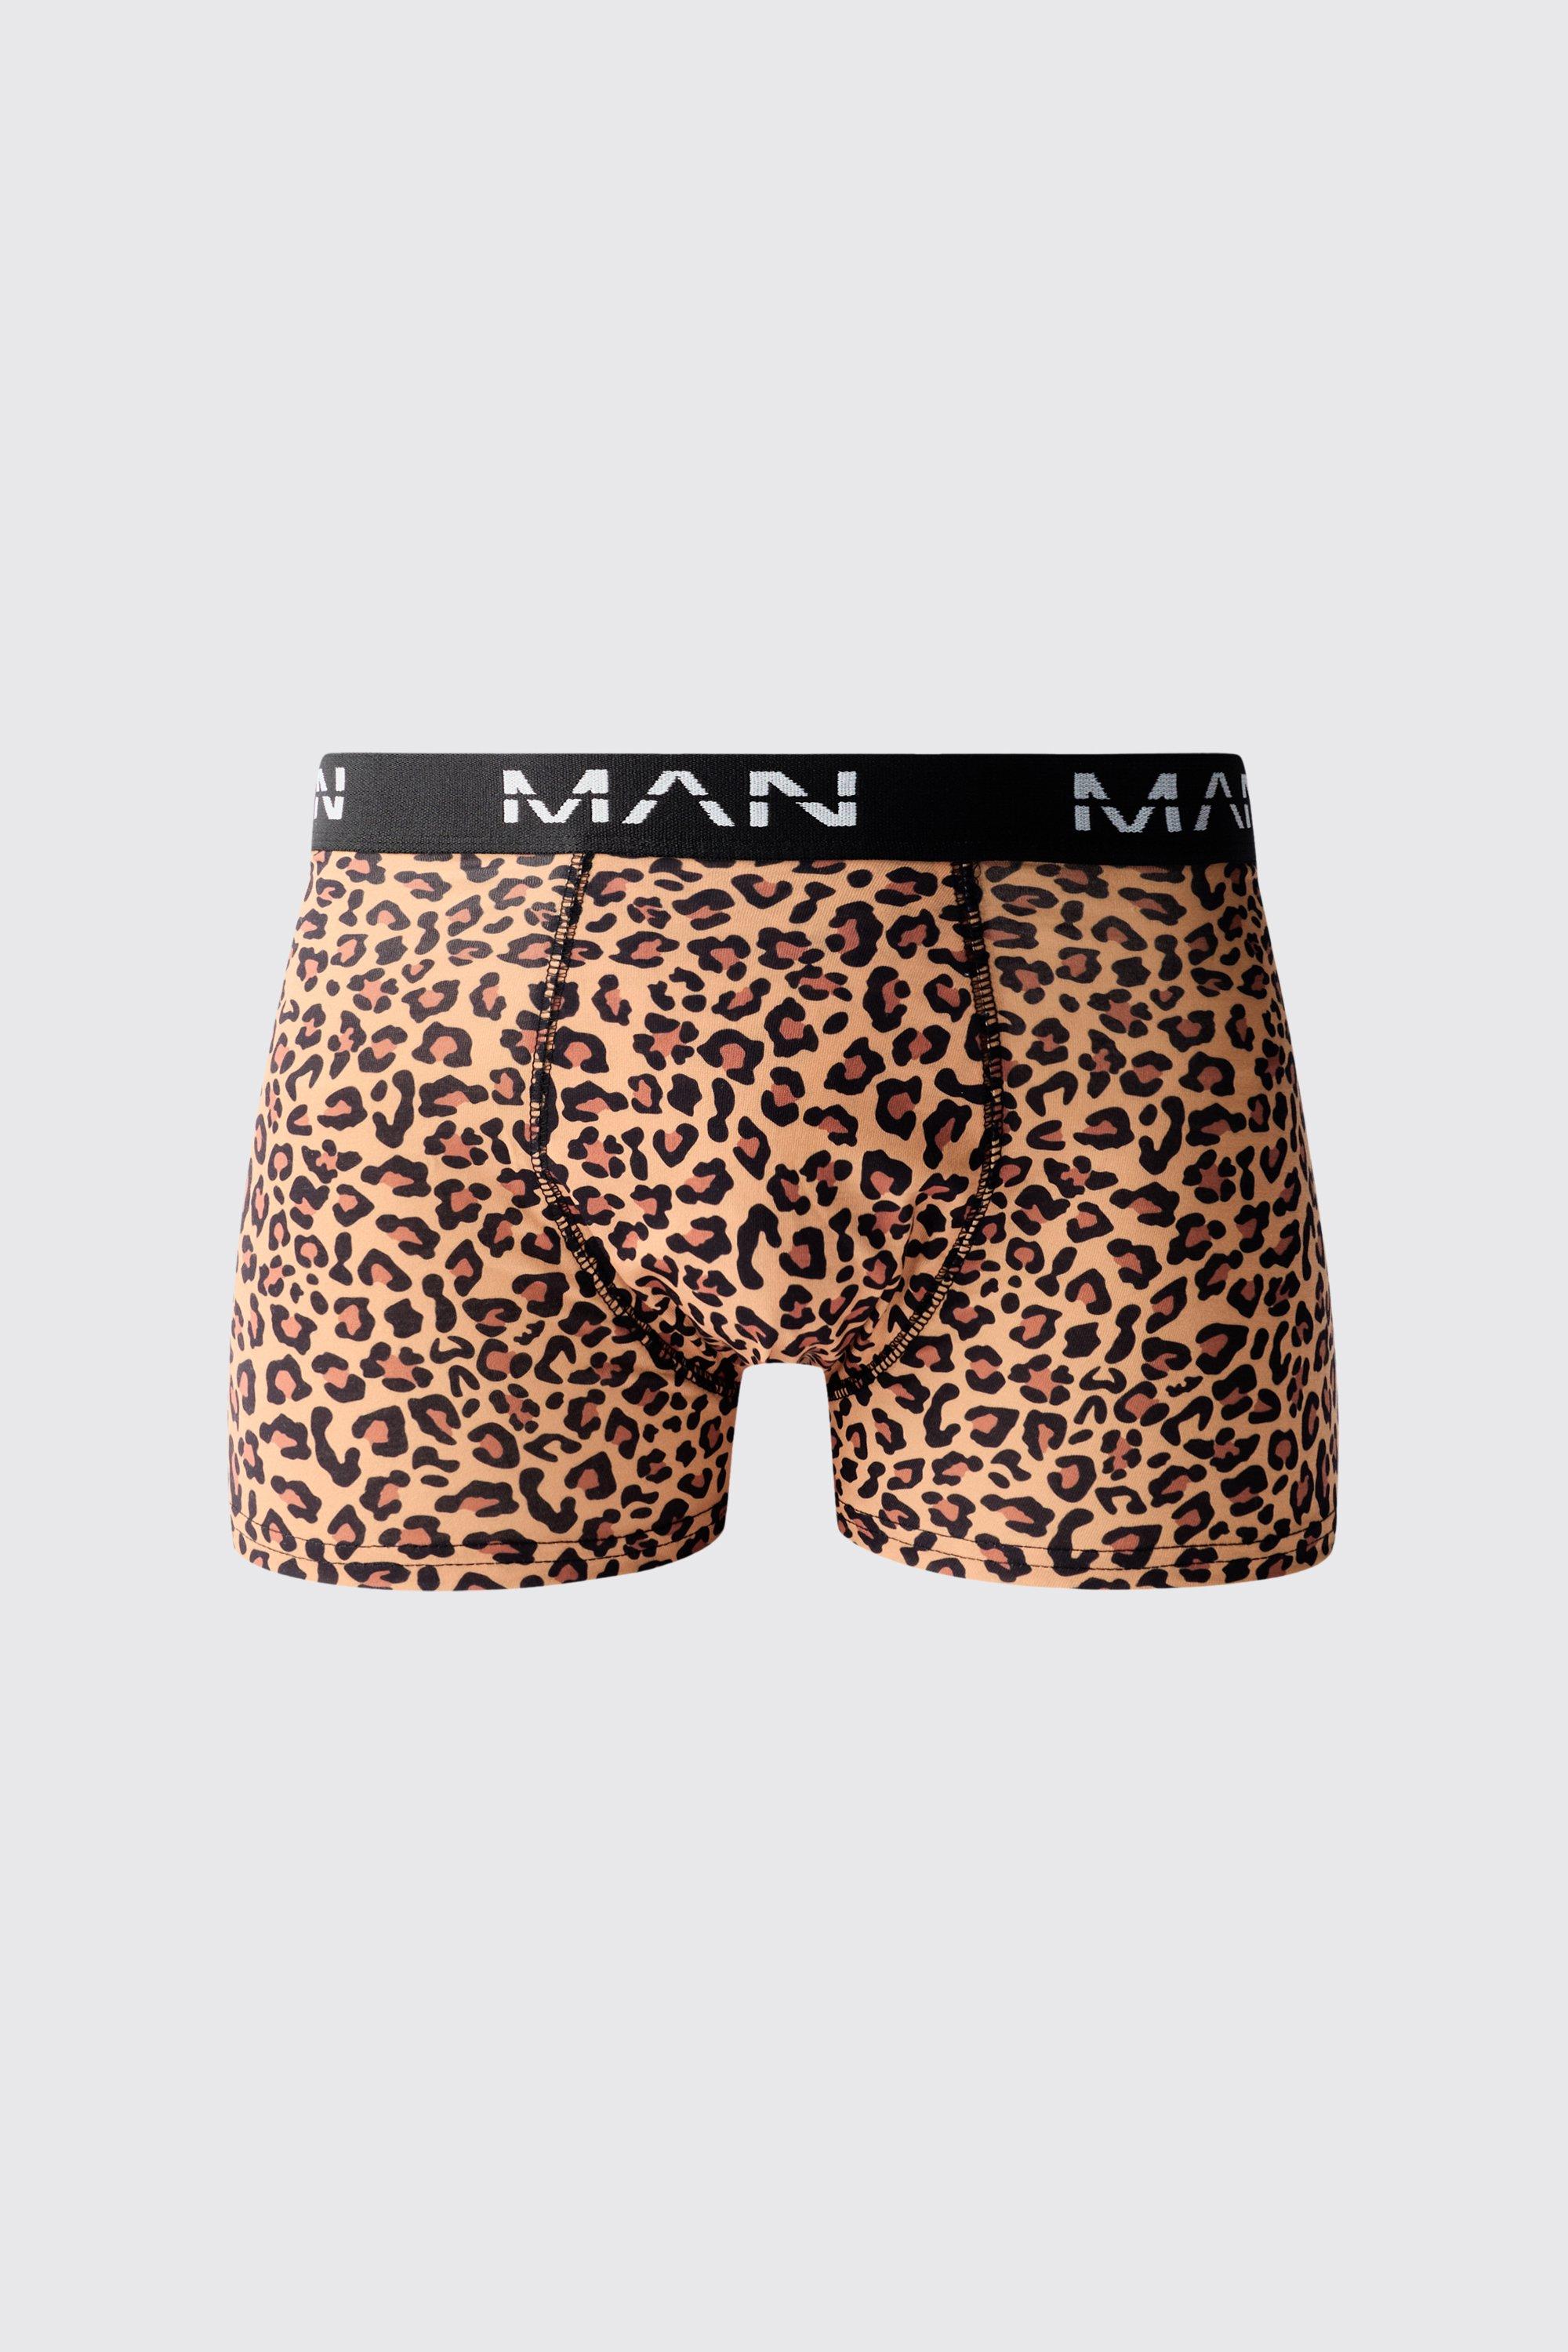 boxer à imprimé léopard - man homme - multicolore - s, multicolore